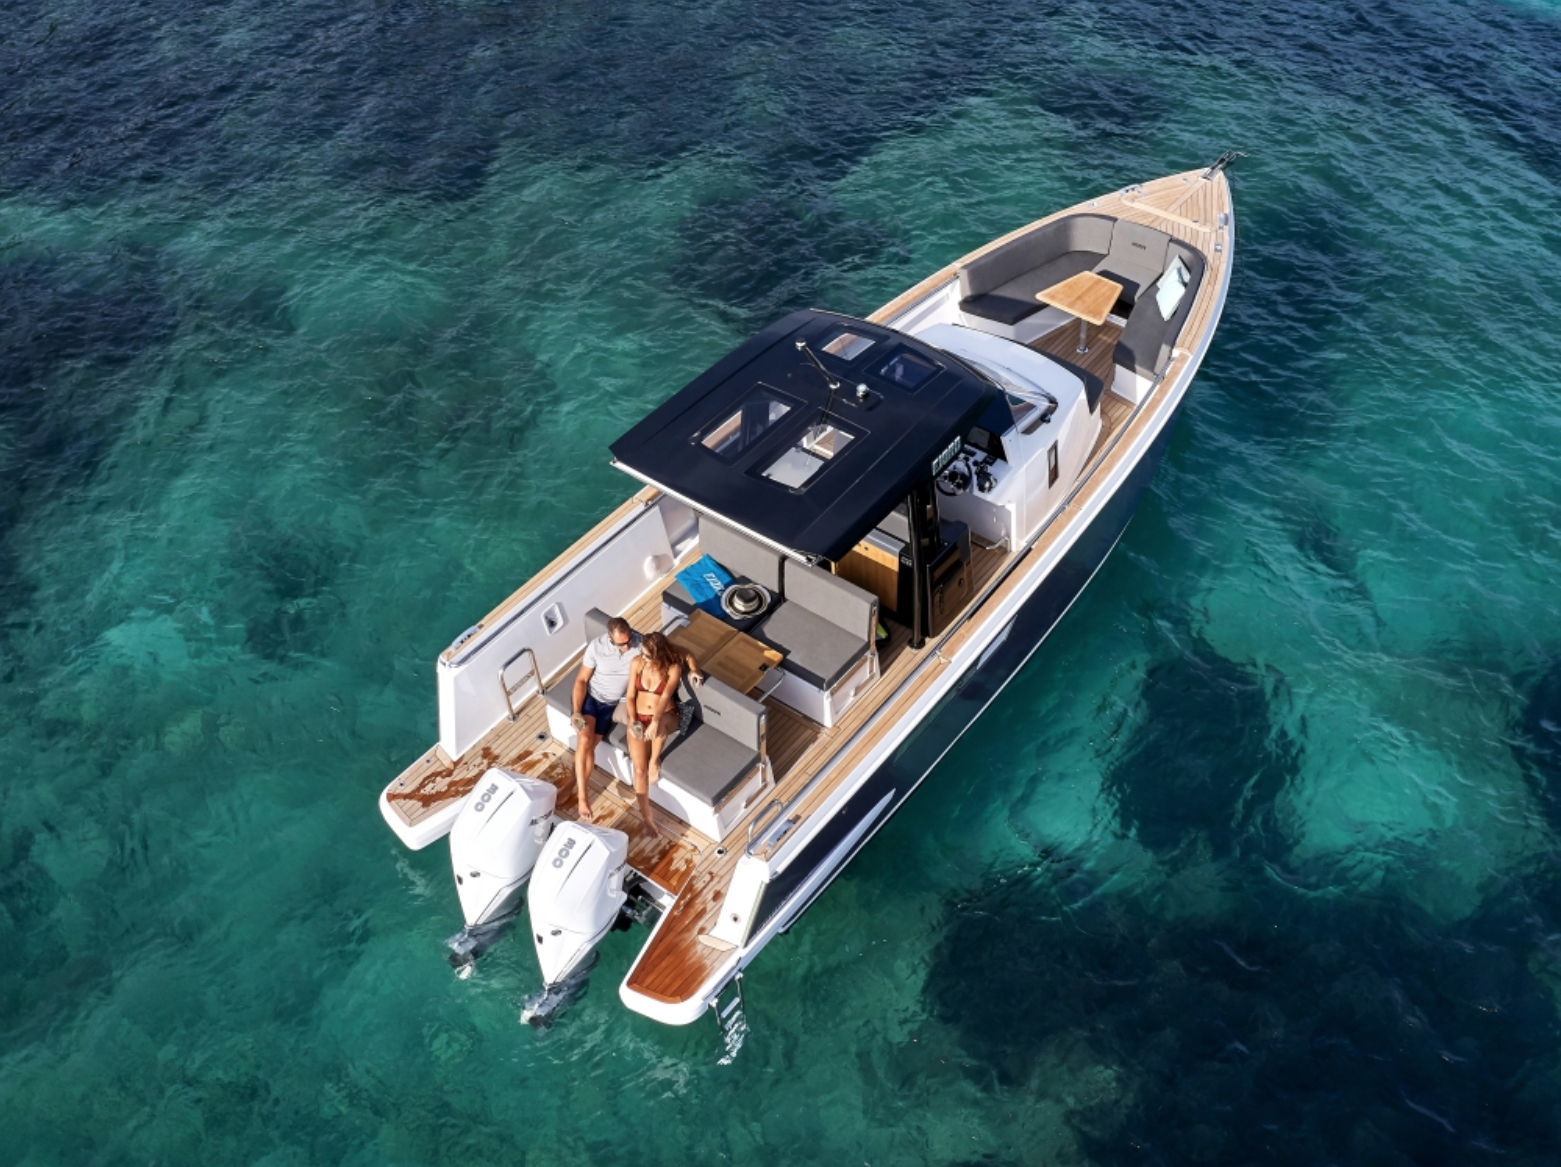 Fjord 38 Express - Gulet rental worldwide & Boat hire in Greece Cyclades Islands Mykonos Mykonos 1